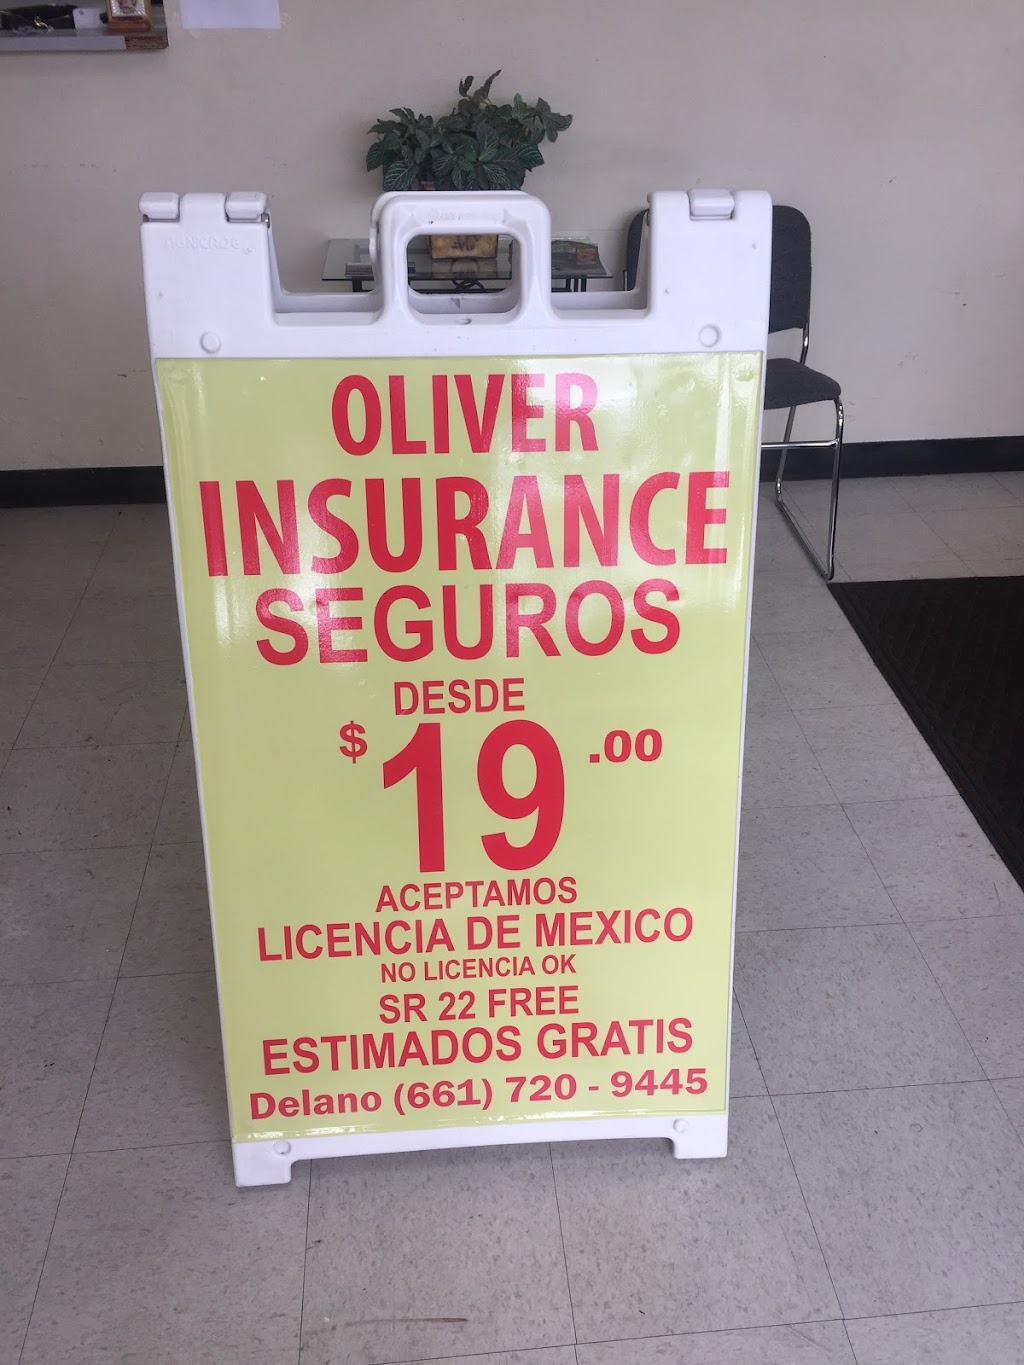 Oliver insurance shafter | 812 Walker St, Shafter, CA 93263, USA | Phone: (661) 746-0616